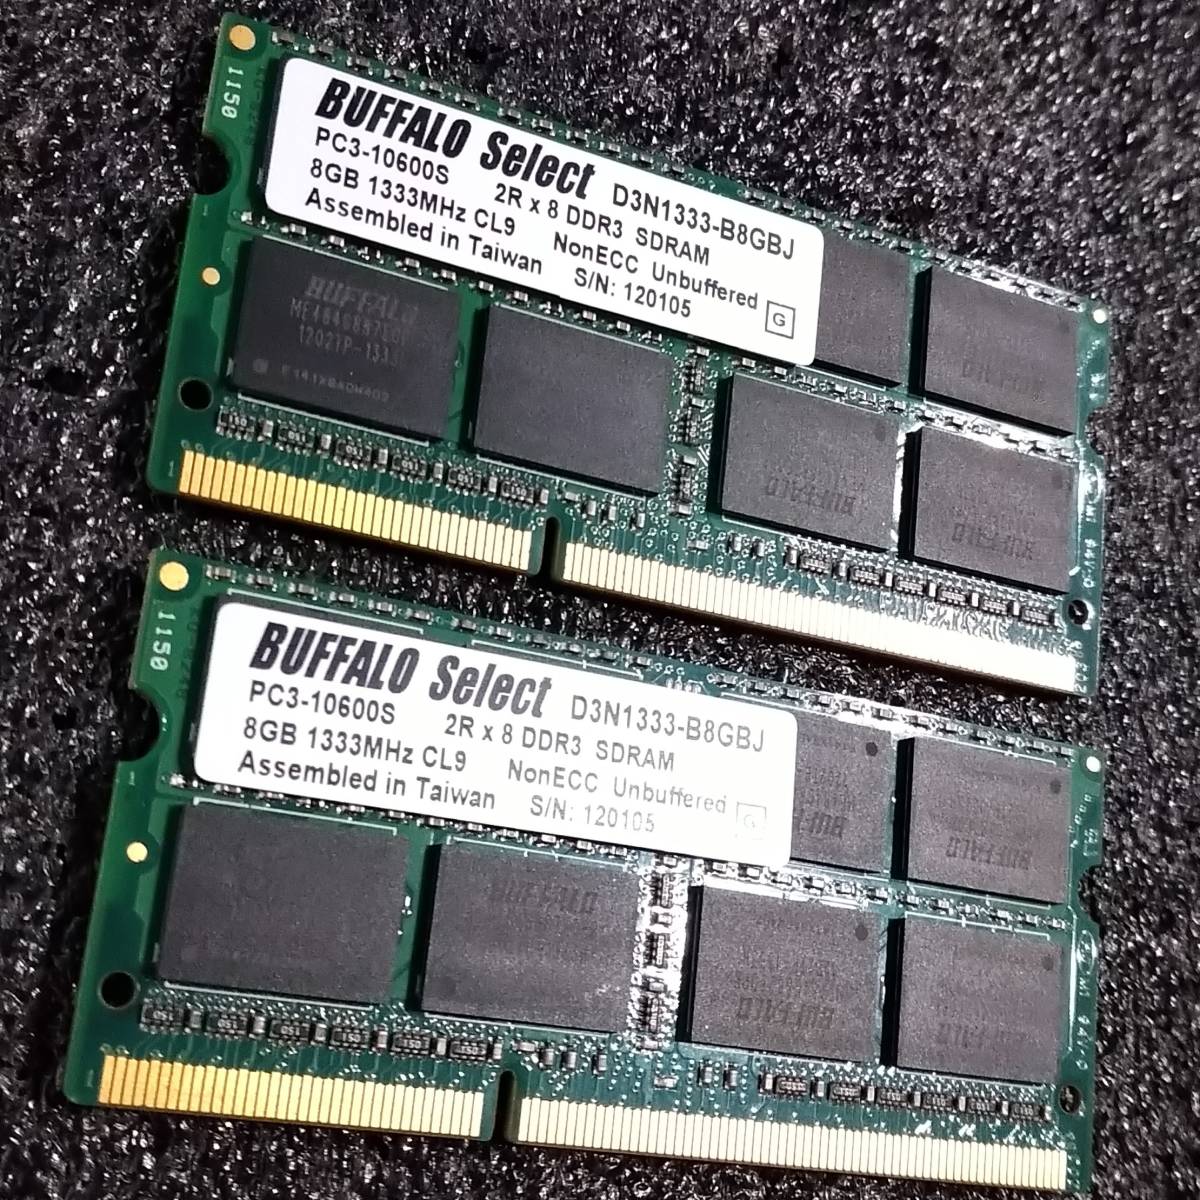 【中古】DDR3 SODIMM 16GB(8GB2枚組) BUFFALO D3N1333-B8GBJ [DDR3-1333 PC3-10600 1.5V]_画像3